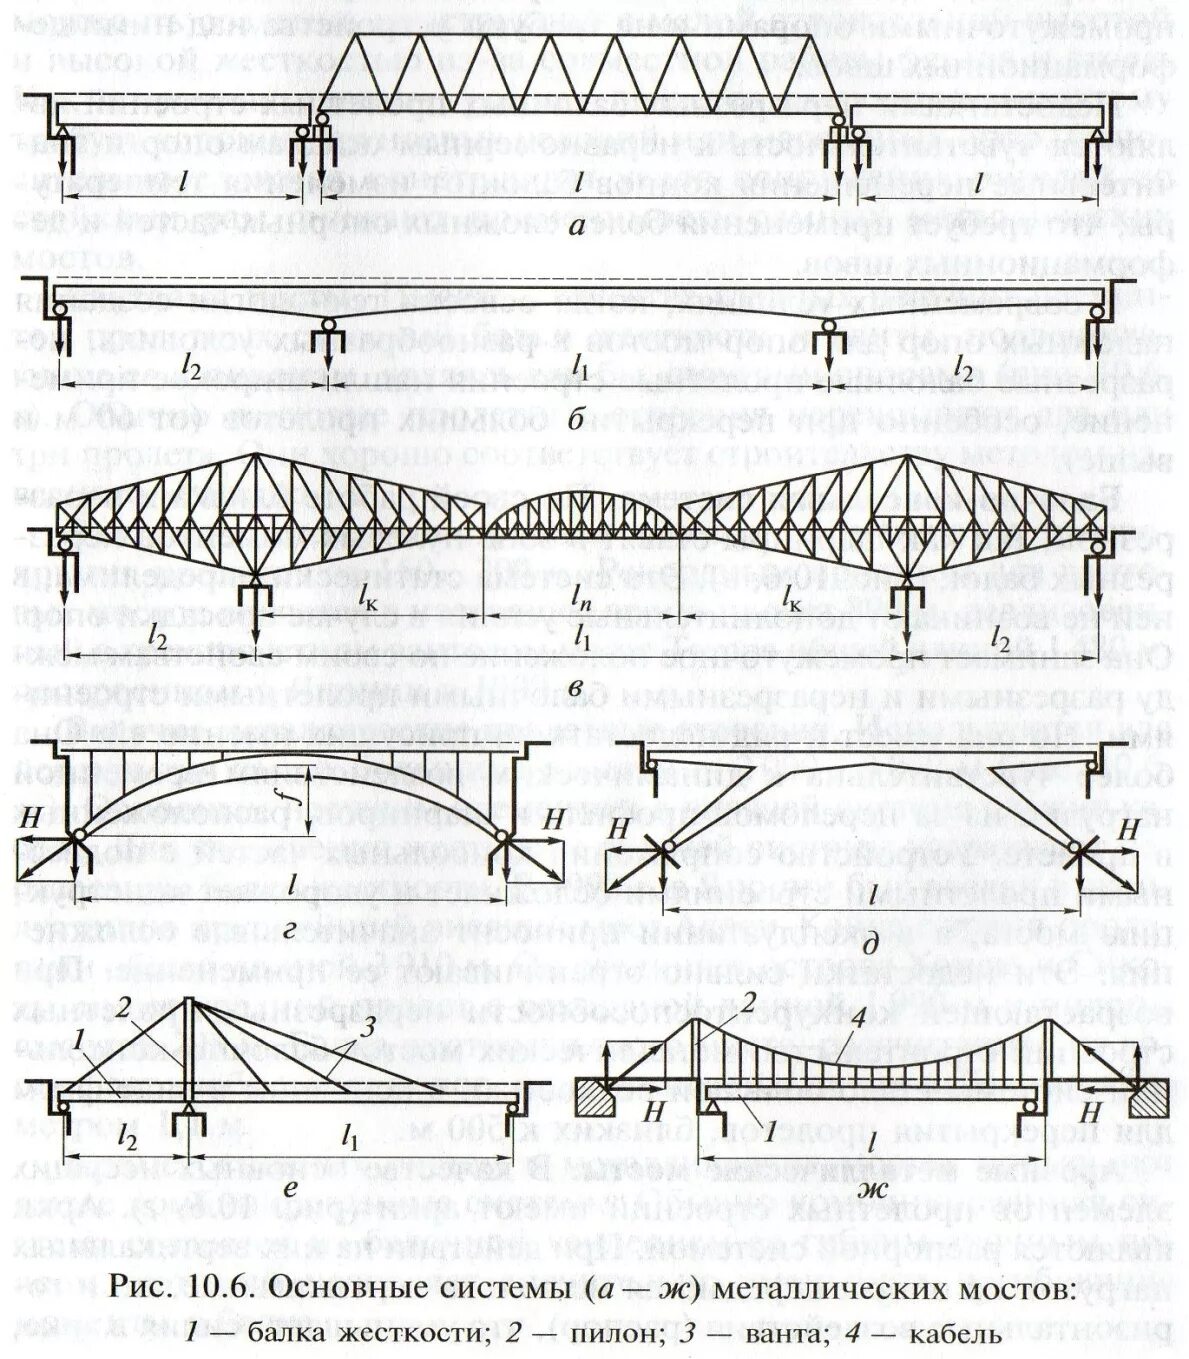 Мост какая система. Схема однопролетного балочного моста. Металлические конструкции пролетные строения мостовых. Балочный мост схема однопролетный. Схема трехпролетного балочного моста.